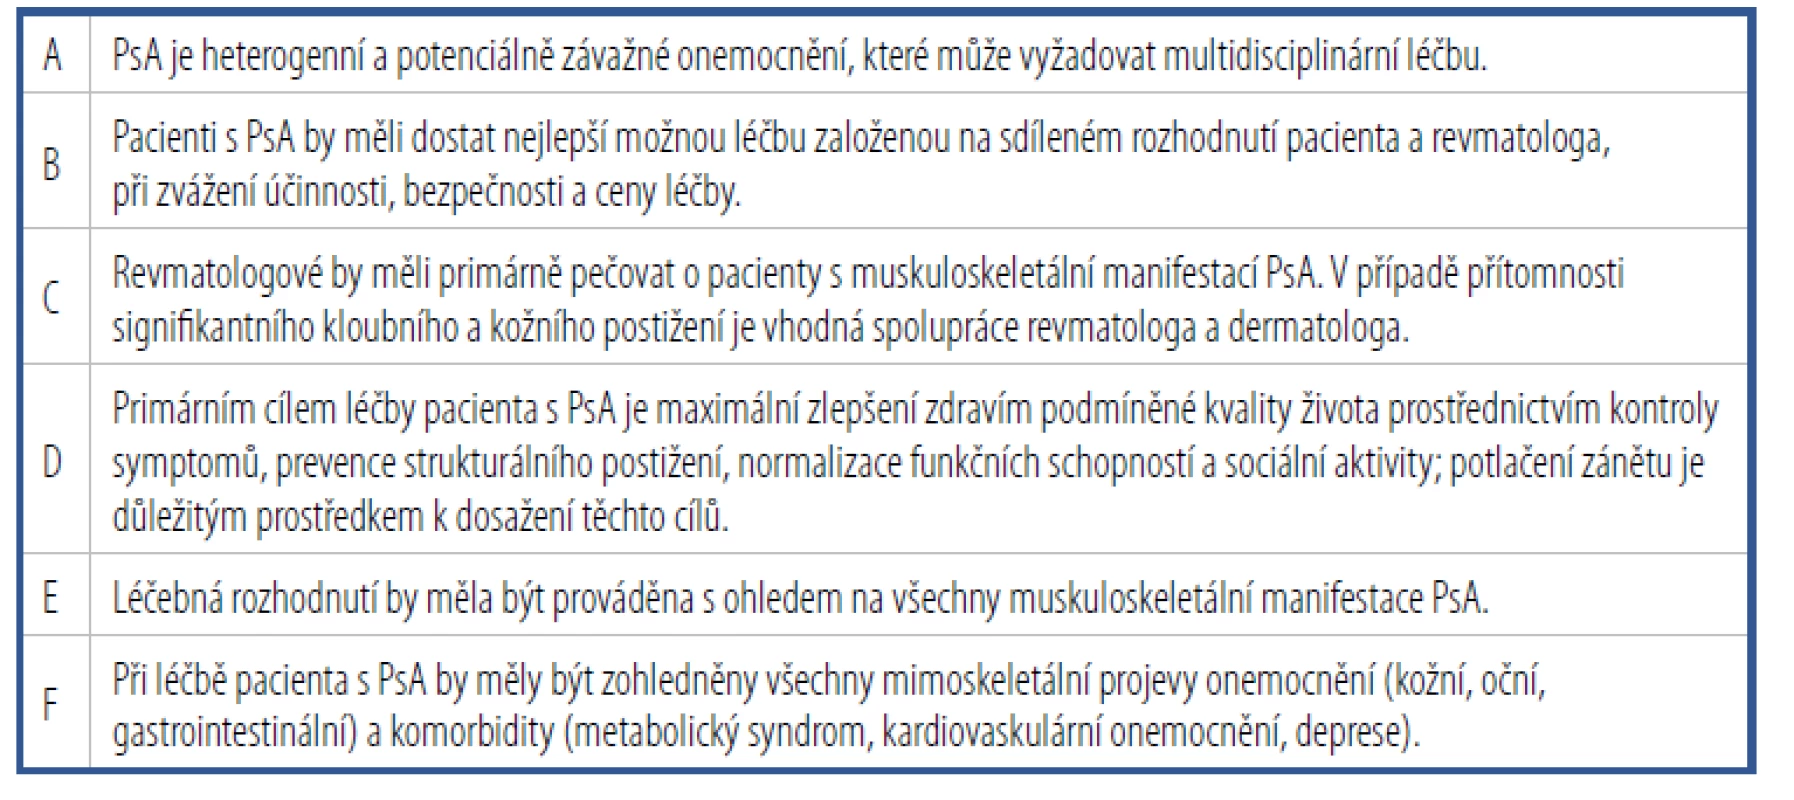 Obecné principy léčby psoriatické artritidy podle Doporučení EULAR k farmakologické
léčbě PsA z roku 2019